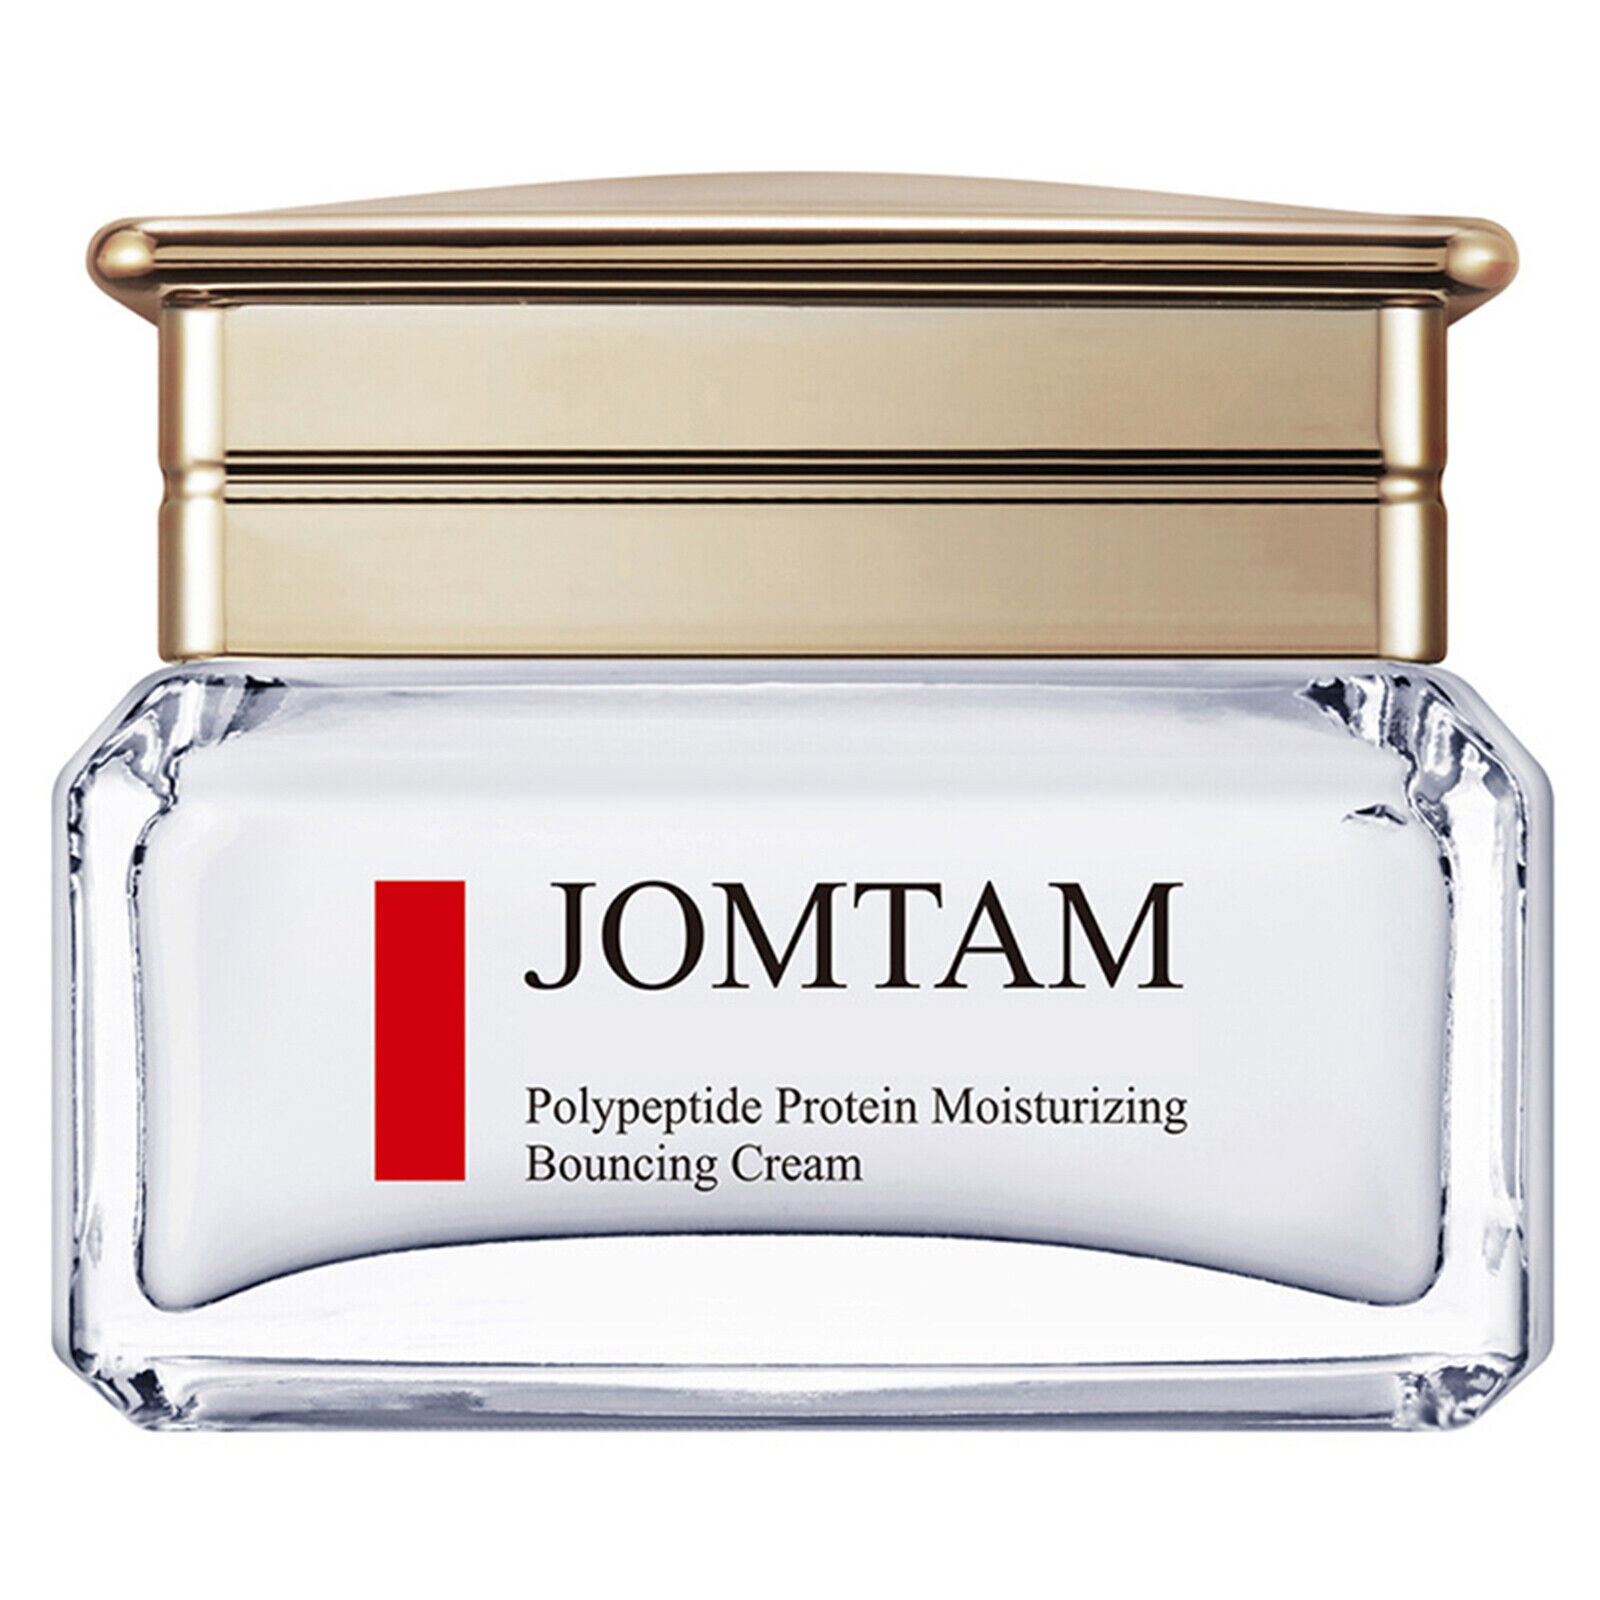 Антивозрастной крем для лица Jomtan Bouncing Cream 50 мл антивозрастной крем для лица jomtan bouncing cream 50 мл